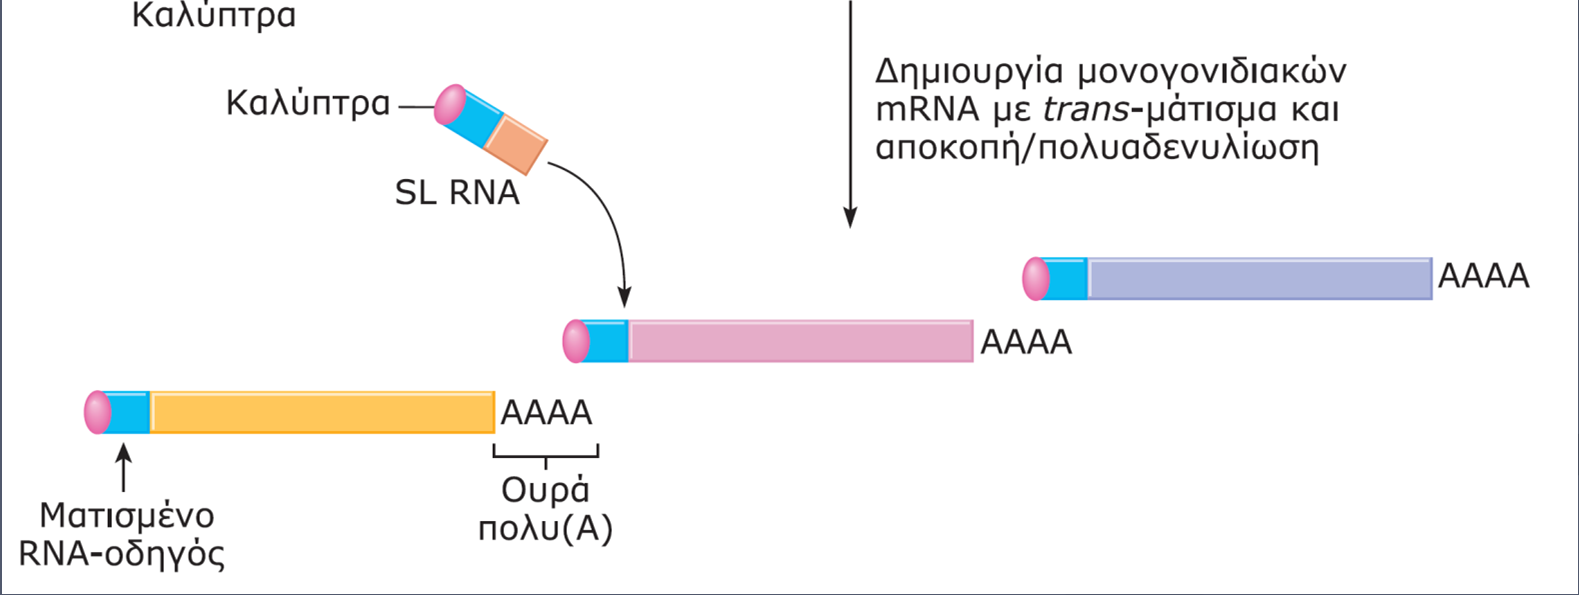 αρχικό ενιαίο πολυγονιδιακό mrna με trans-μάτισμα και